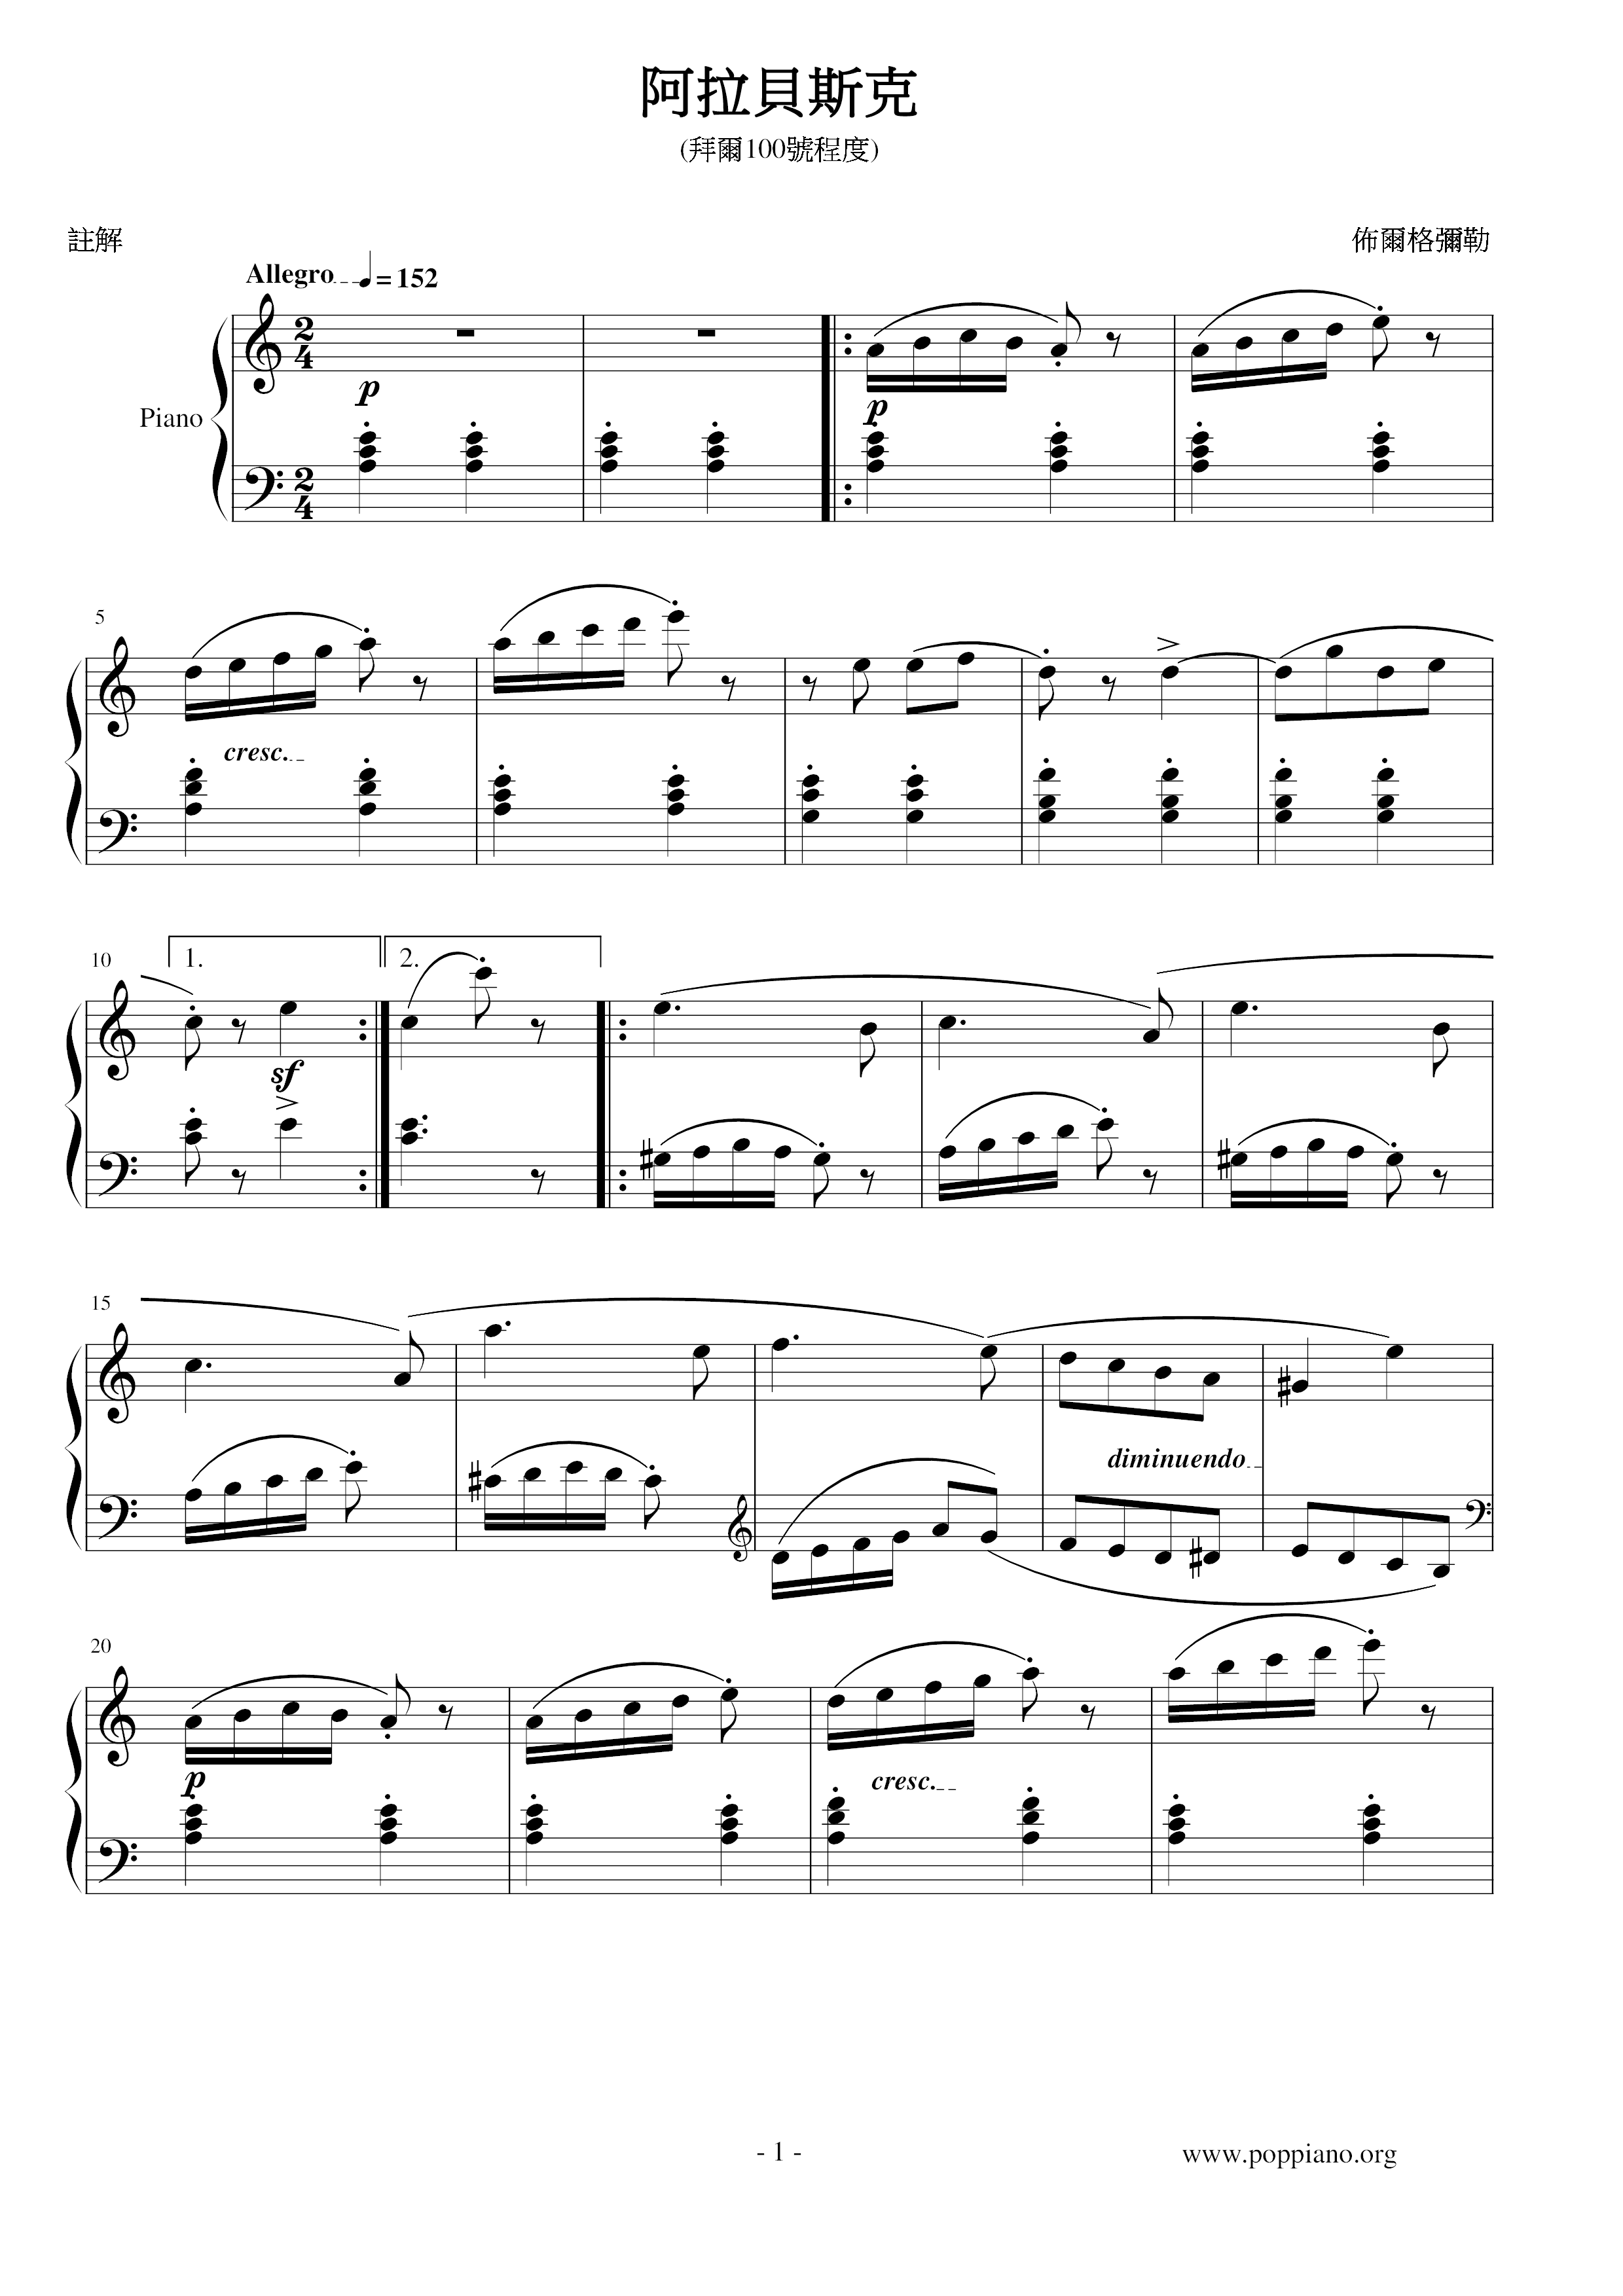 Arabesque 阿拉貝斯克琴譜